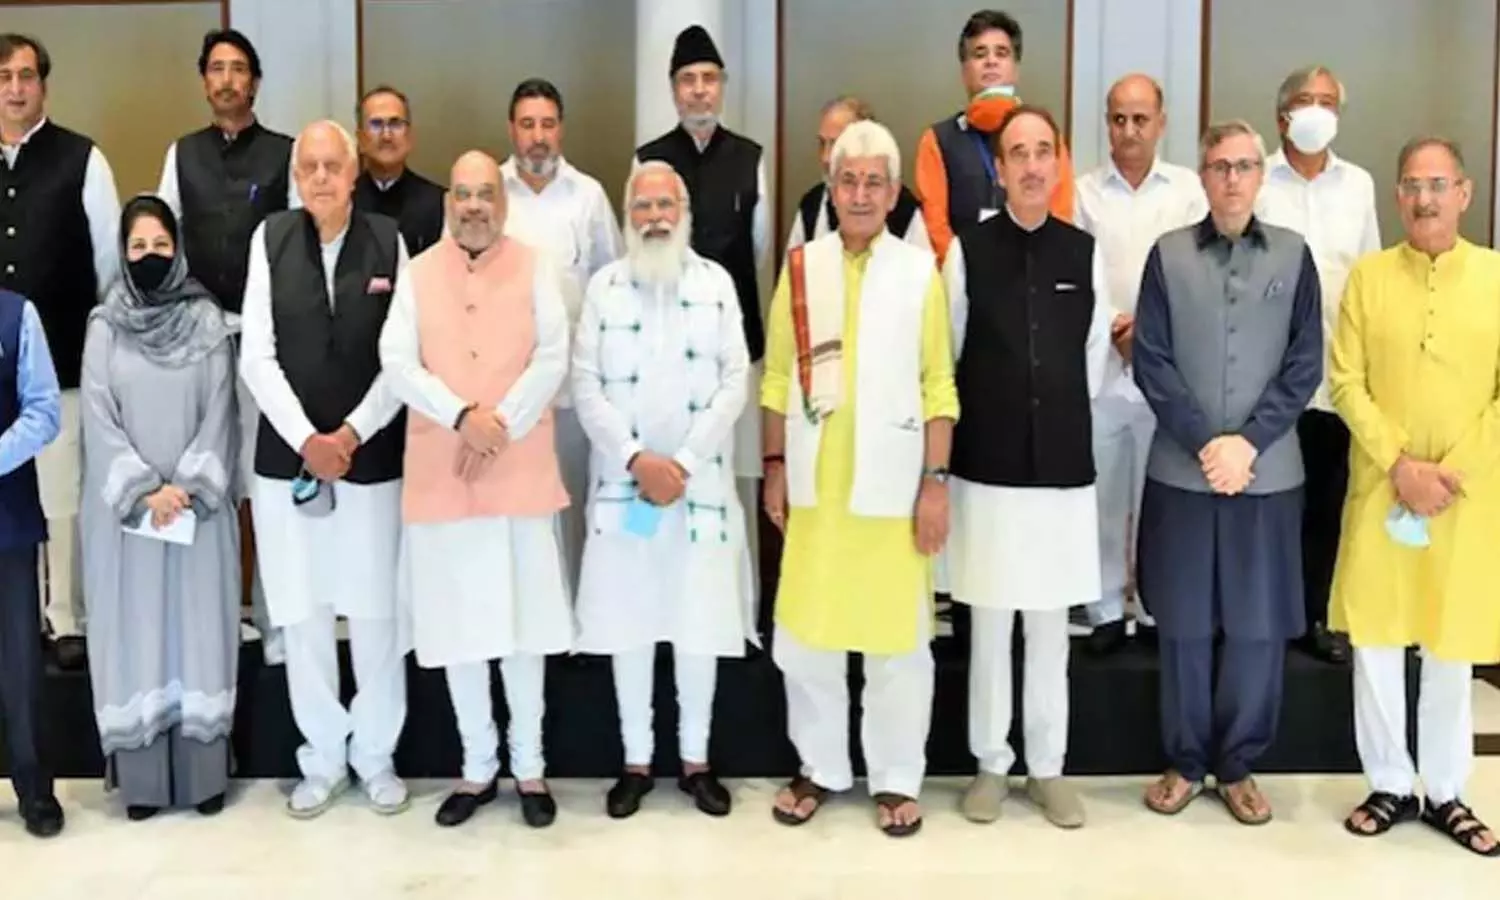 PM Modi-J&K Leaders Meet: जम्मू-कश्मीर के नेताओं के साथ PM मोदी की बैठक, जानिए क्या रहा खास? प्वाइंट में समझें